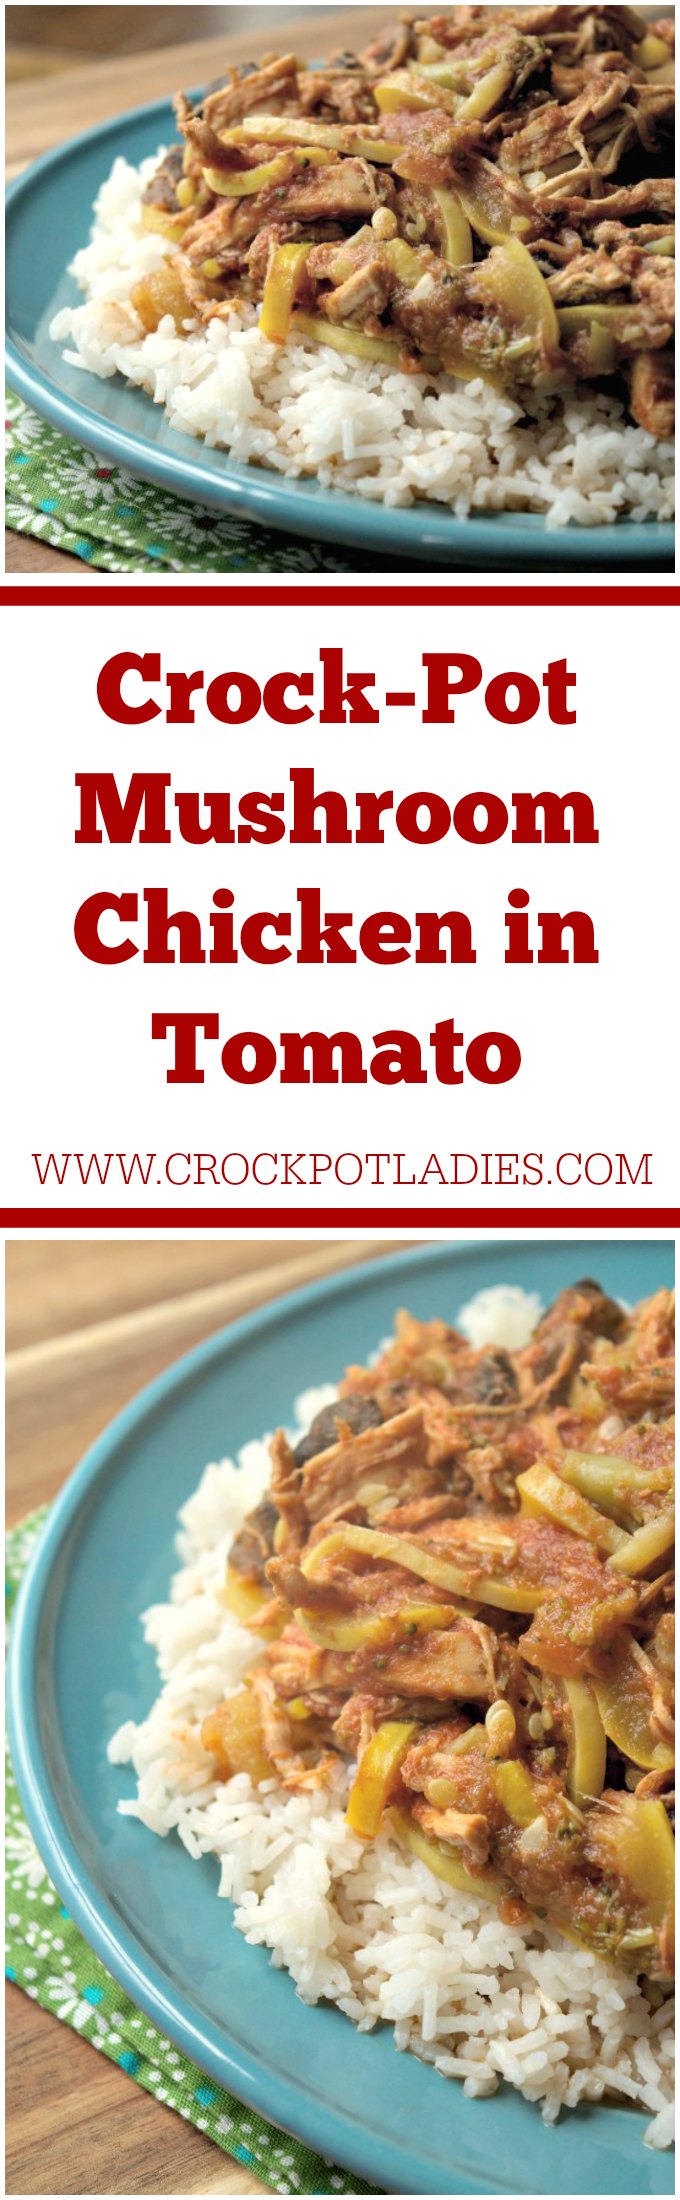 Crock-Pot Mushroom Chicken in Tomato